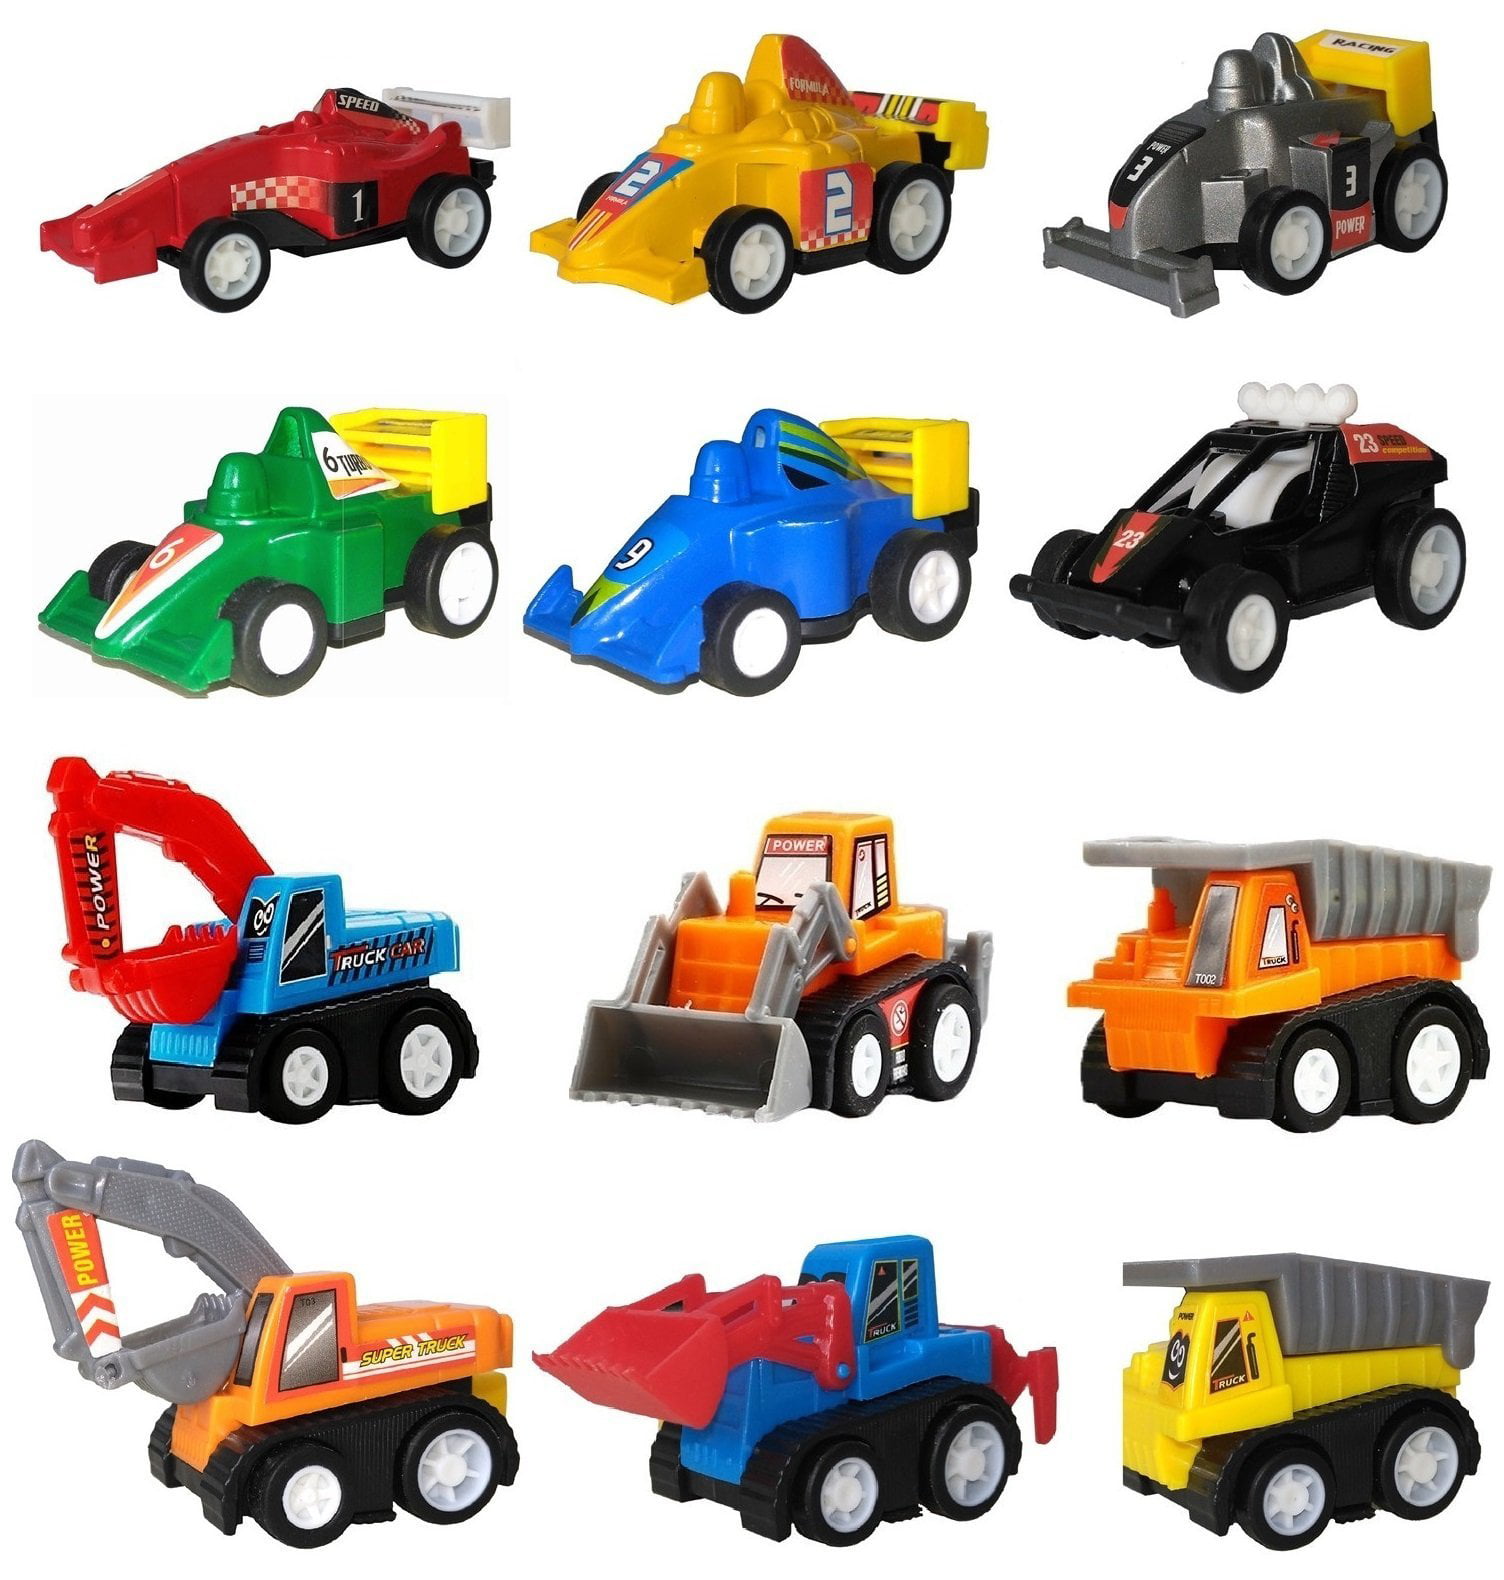 racing car toys for boys